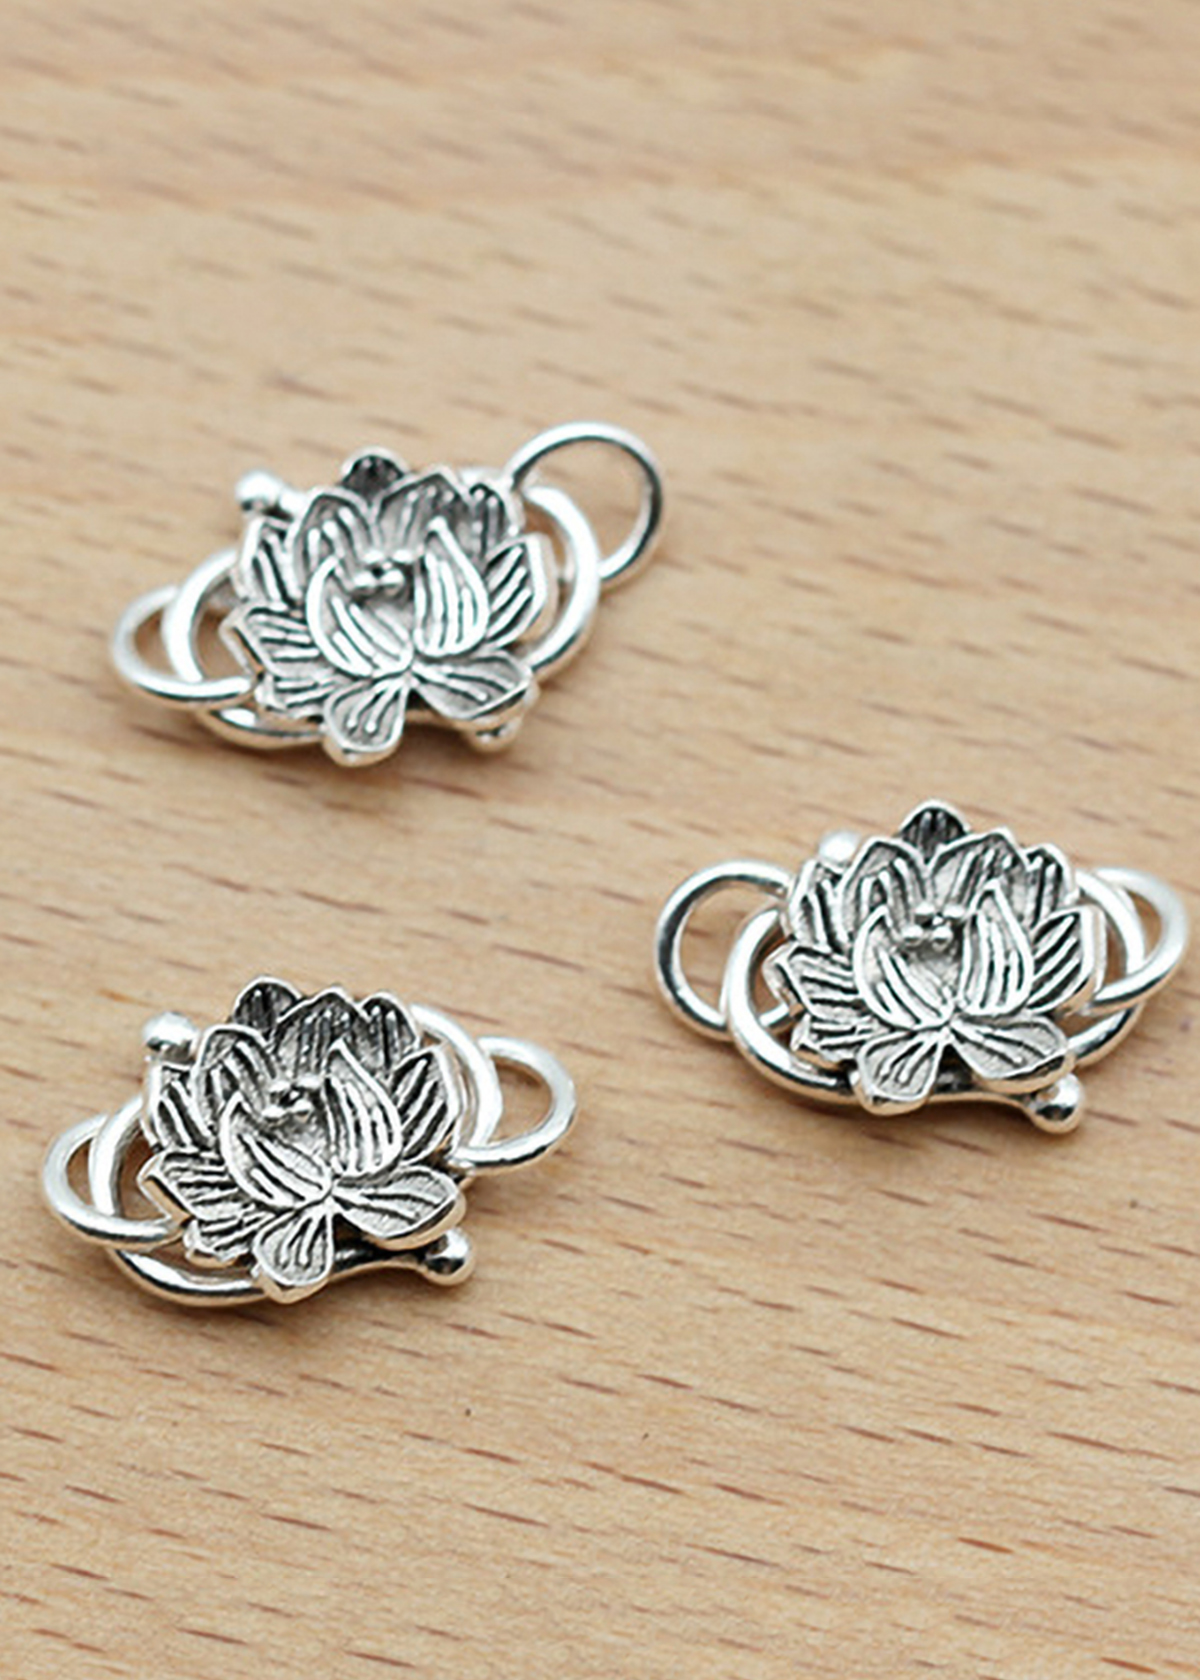 Combo 2 cái charm bạc móc khóa hình hoa sen kết vòng tay, dây chuỗi - Ngọc Quý Gemstones